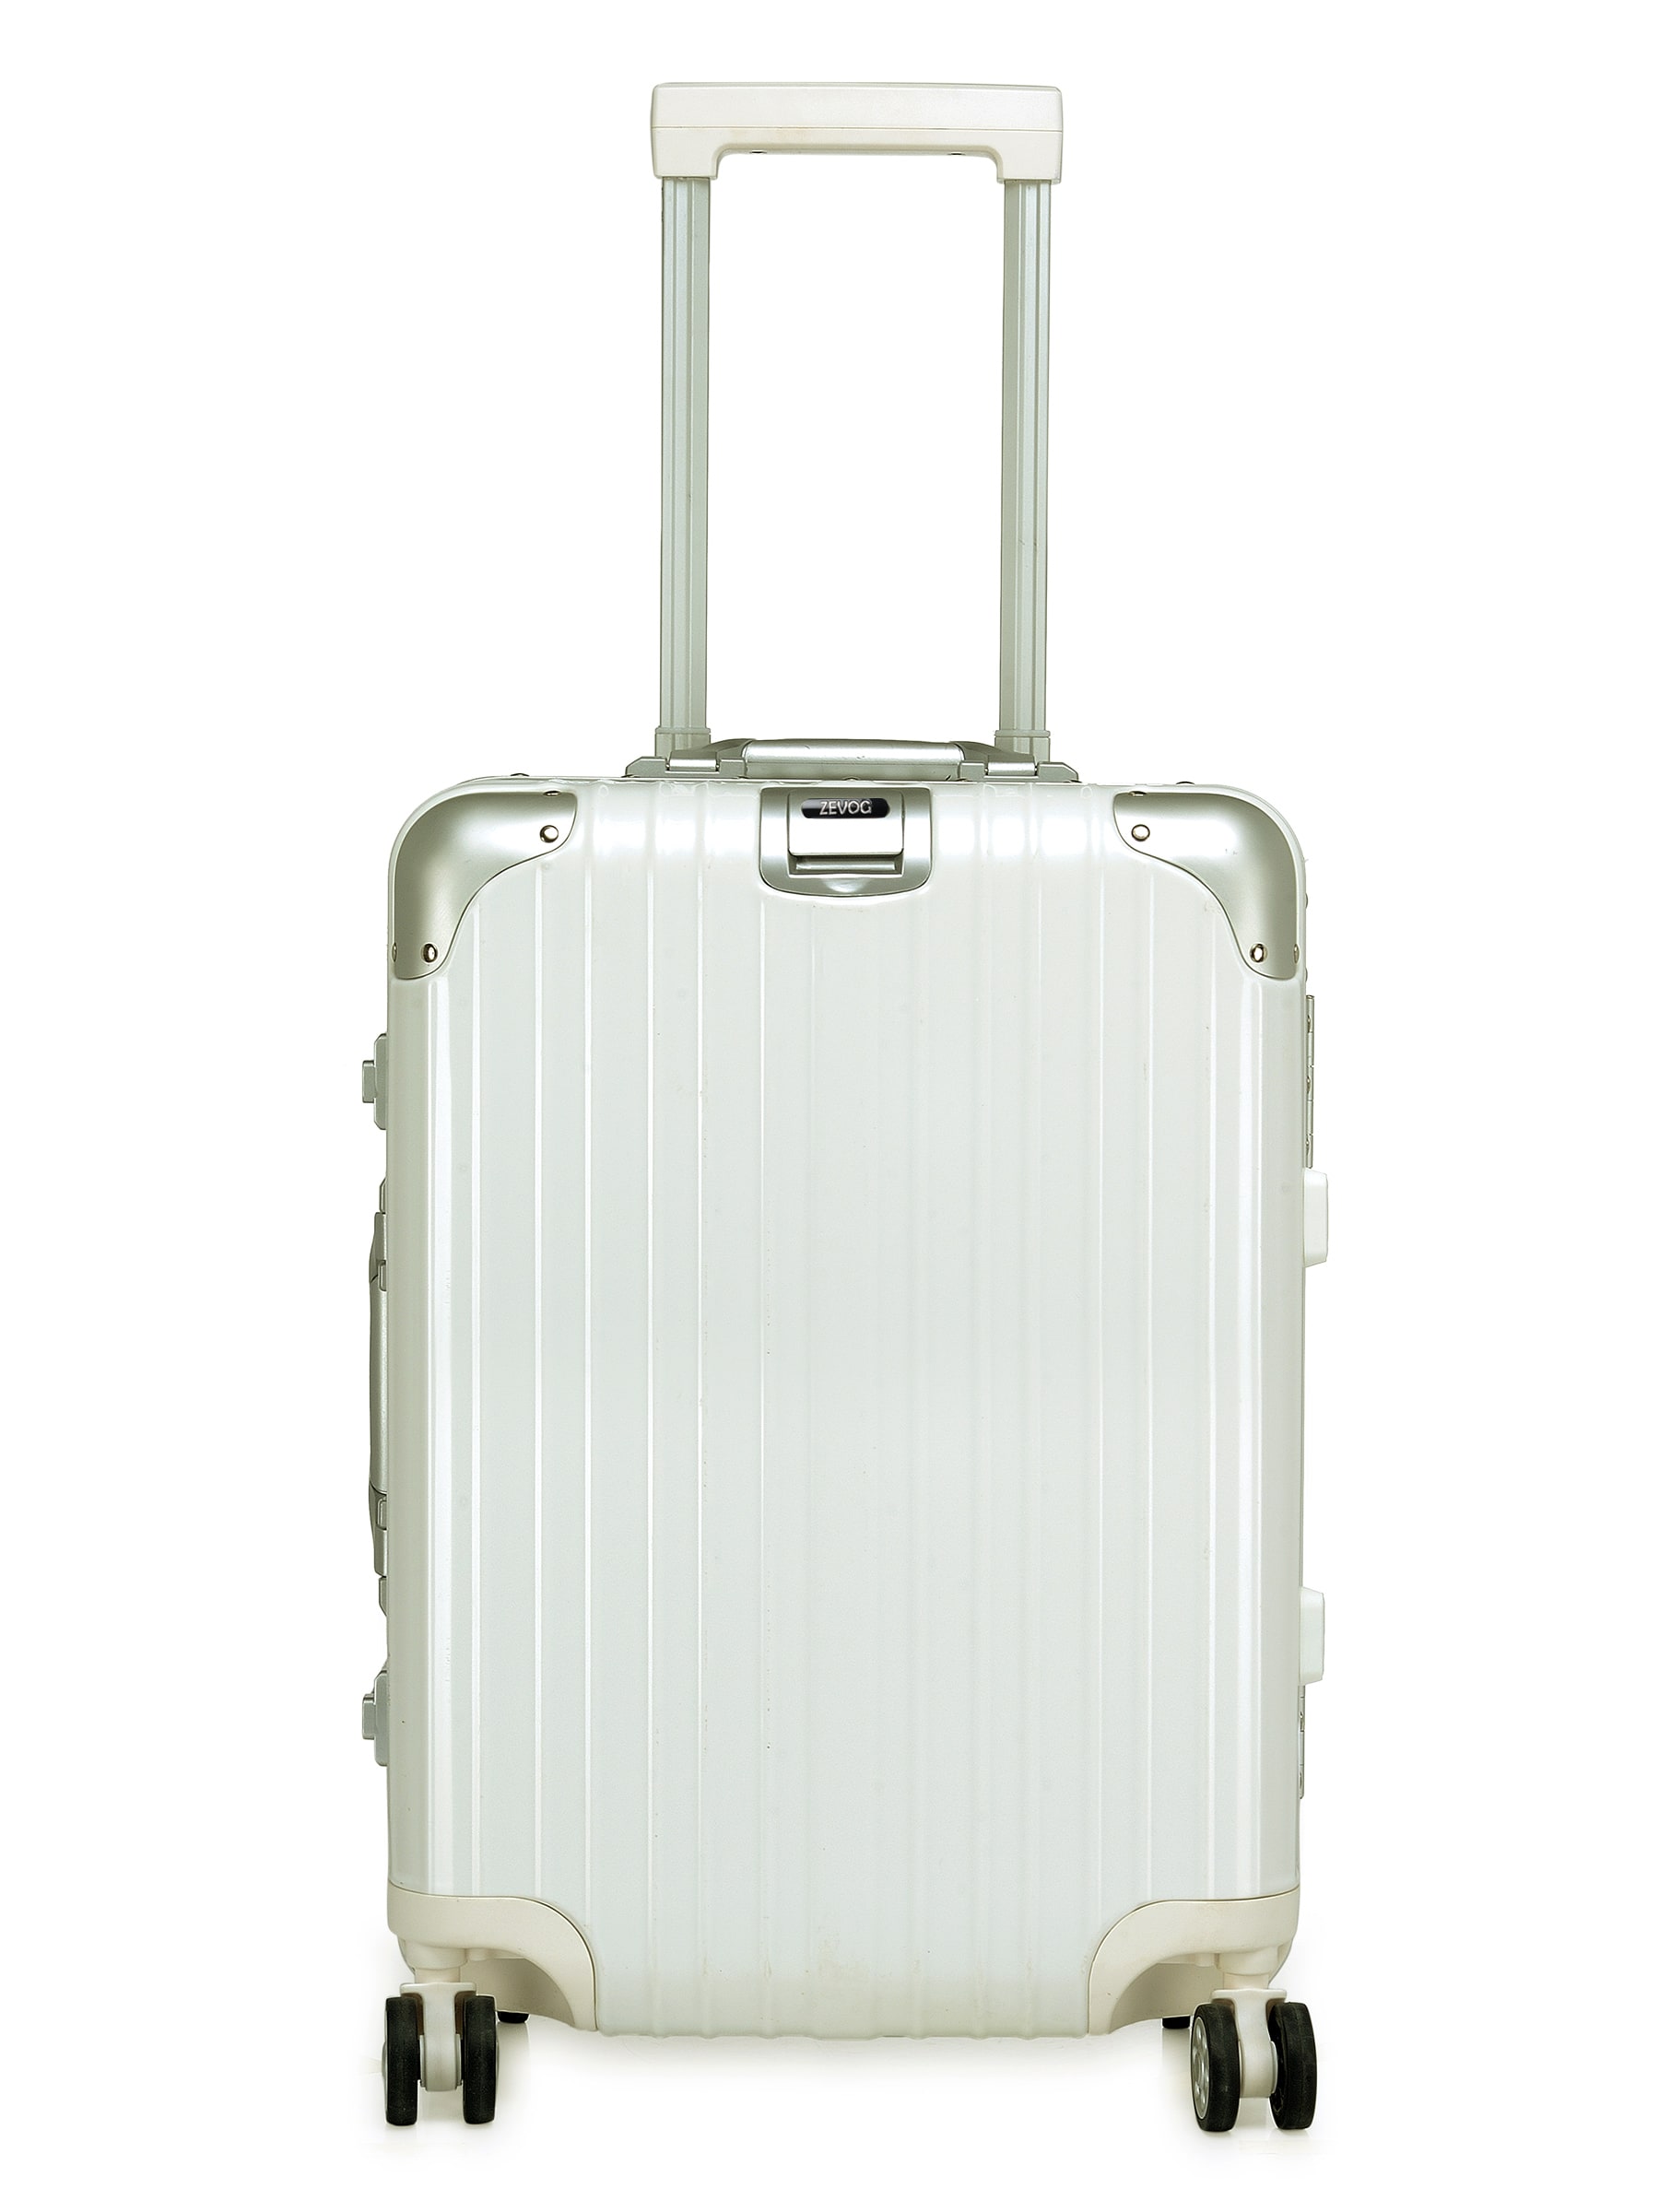 ZEVOG California Love Cabin Luggage Premium White color 20 Inch 0759108943466 min